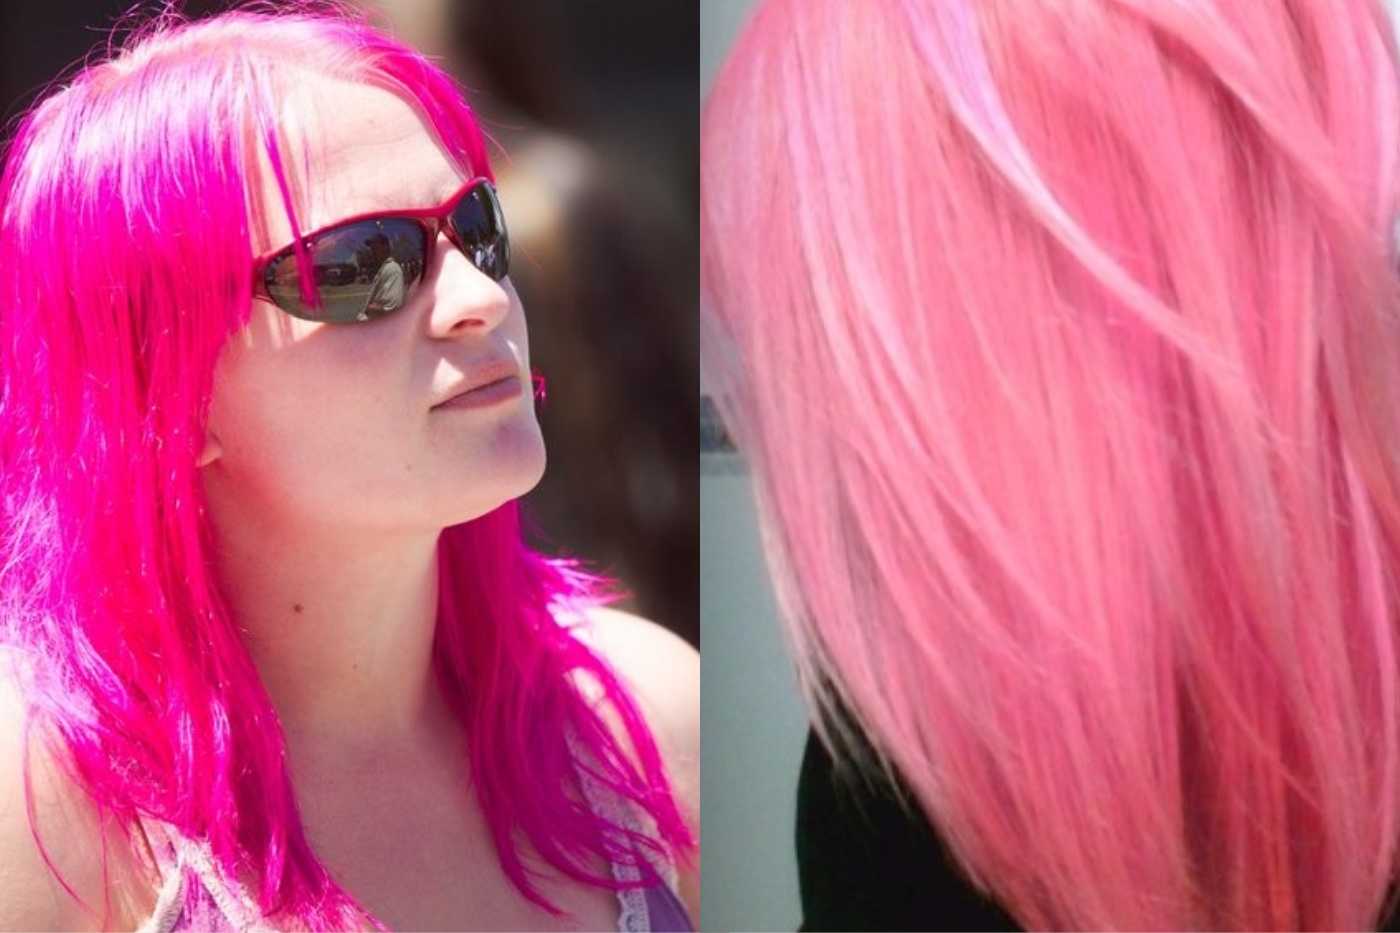 Вся палитра оттенков розовых волос Какие розовые цвета волос в моде Как окрашивать волосы в розовый Какие отенки идут разным цветотипам Всё про розовые волосы